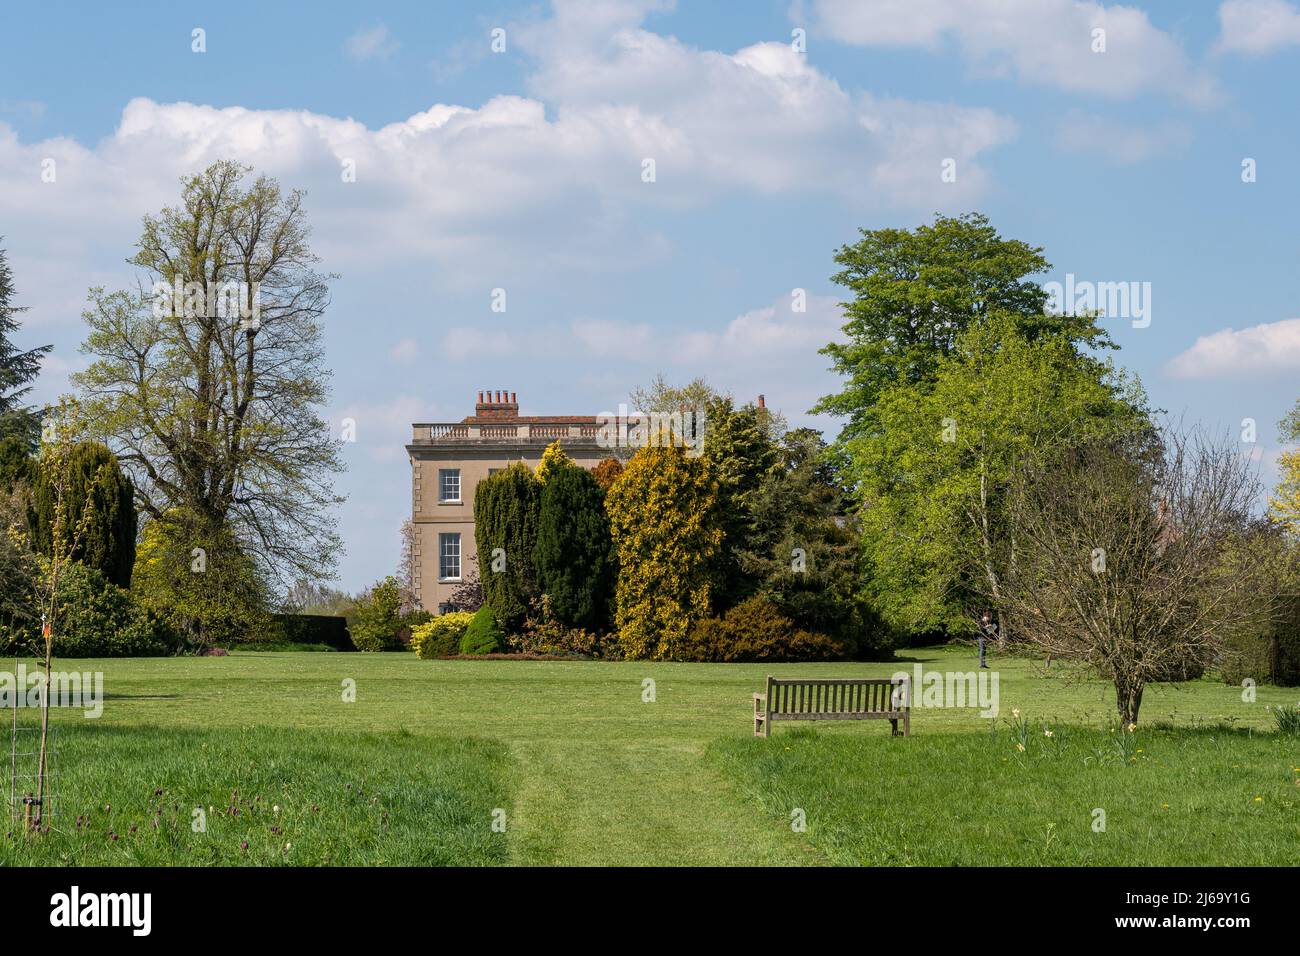 Waterperry Gardens et demeure ancestrale au printemps, une attraction touristique à Oxfordshire, Angleterre, Royaume-Uni Banque D'Images